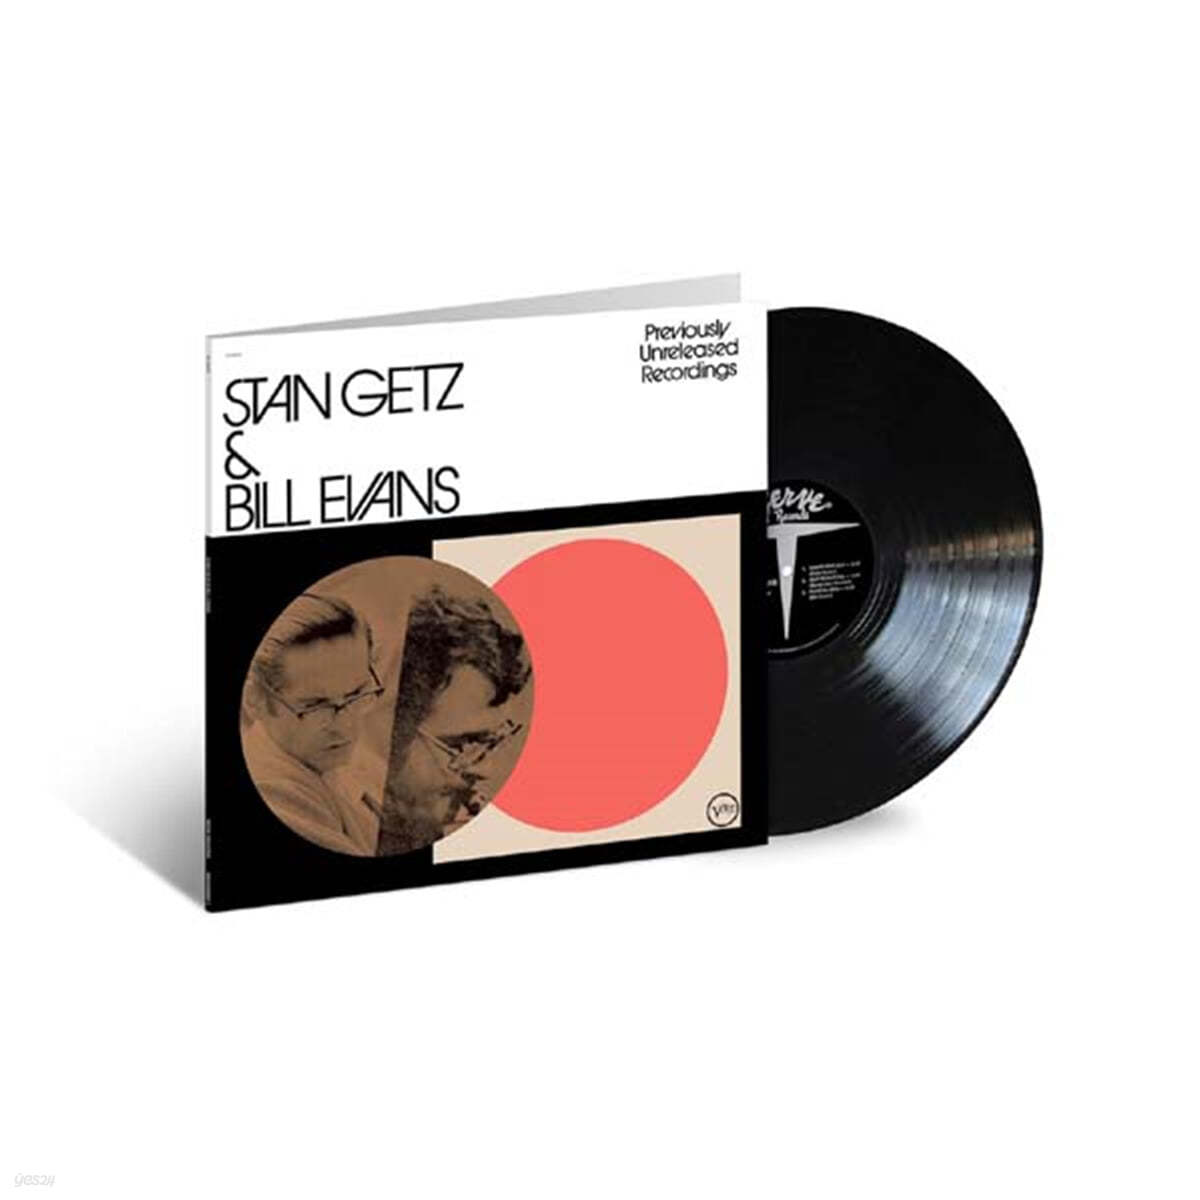 Stan Getz / Bill Evans (스탄 게츠 / 빌 에반스) - Previously Unreleased Recordings [LP]